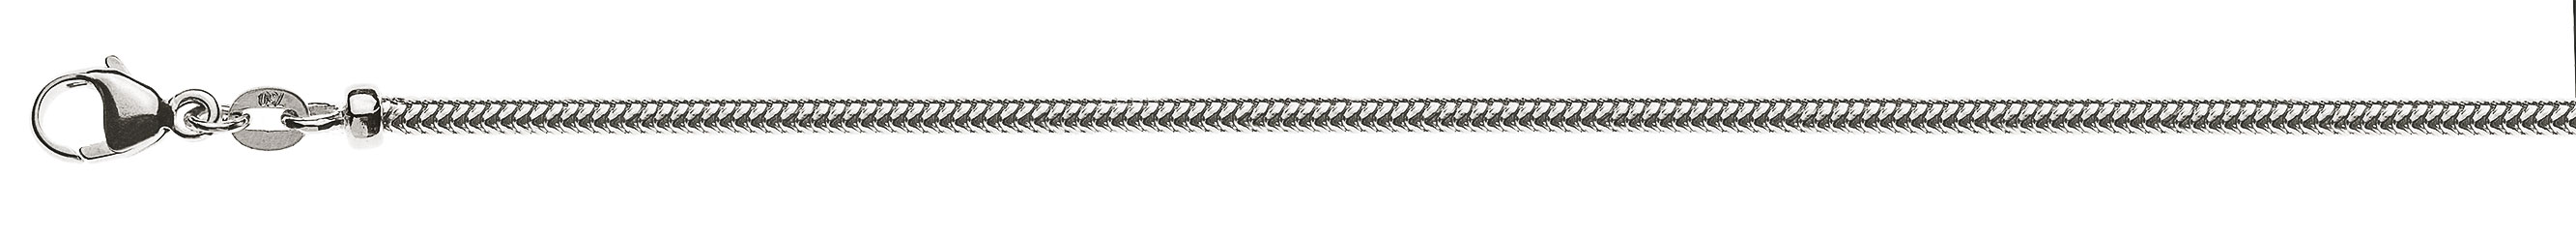 AURONOS Prestige Halskette Weissgold 18K Schlangenkette 40cm 2.4mm